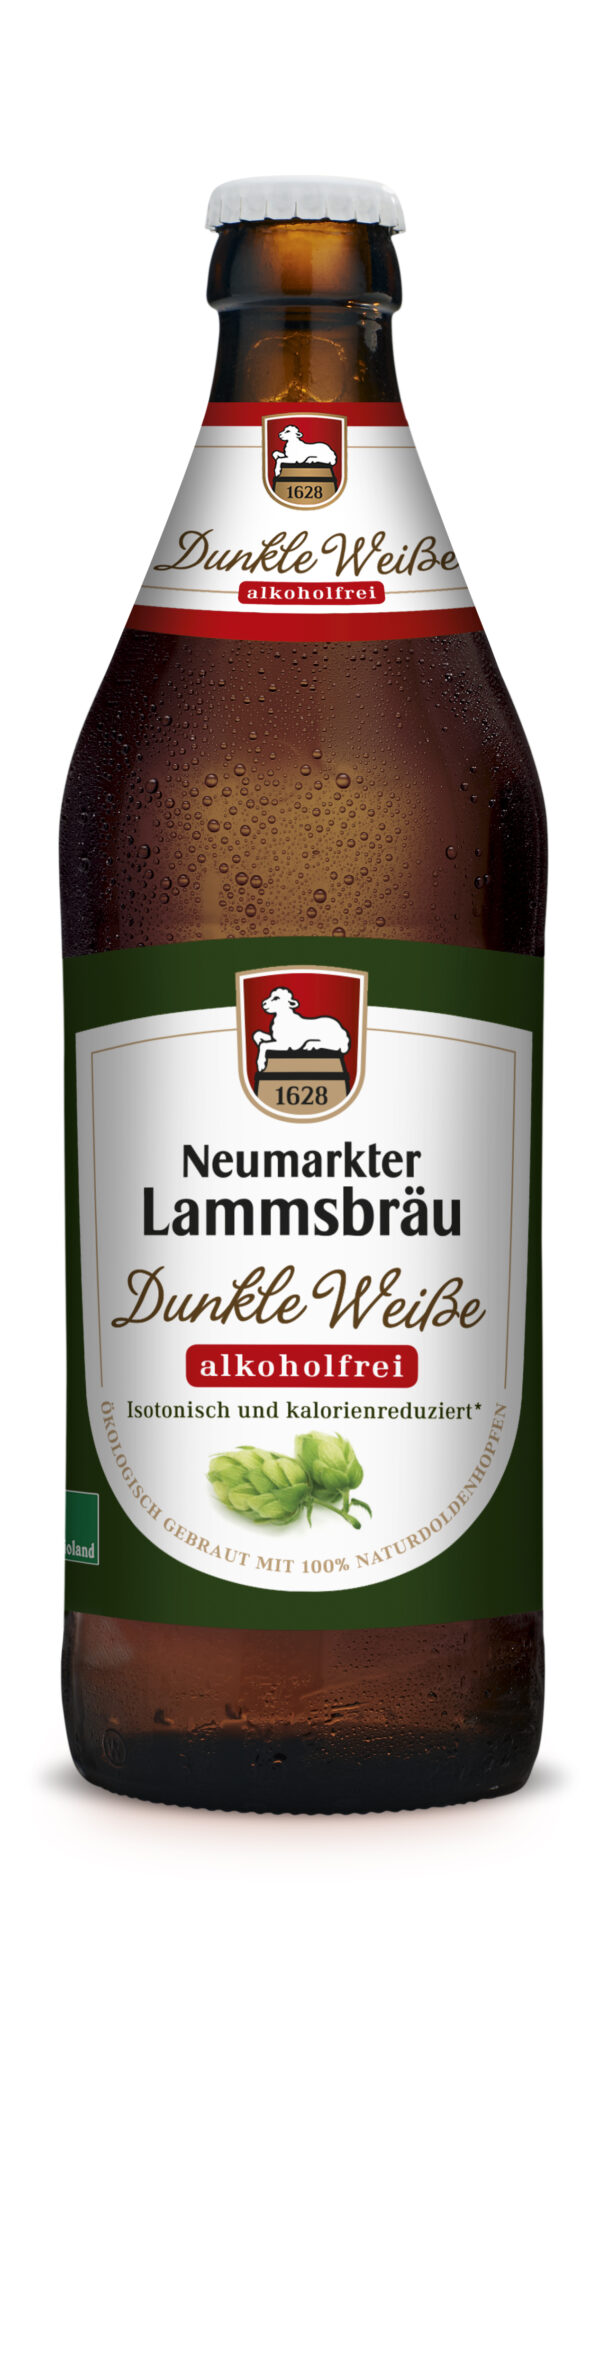 Neumarkter Lammsbräu Dunkle Weiße alk.frei (Bio) 10 x 0,5l